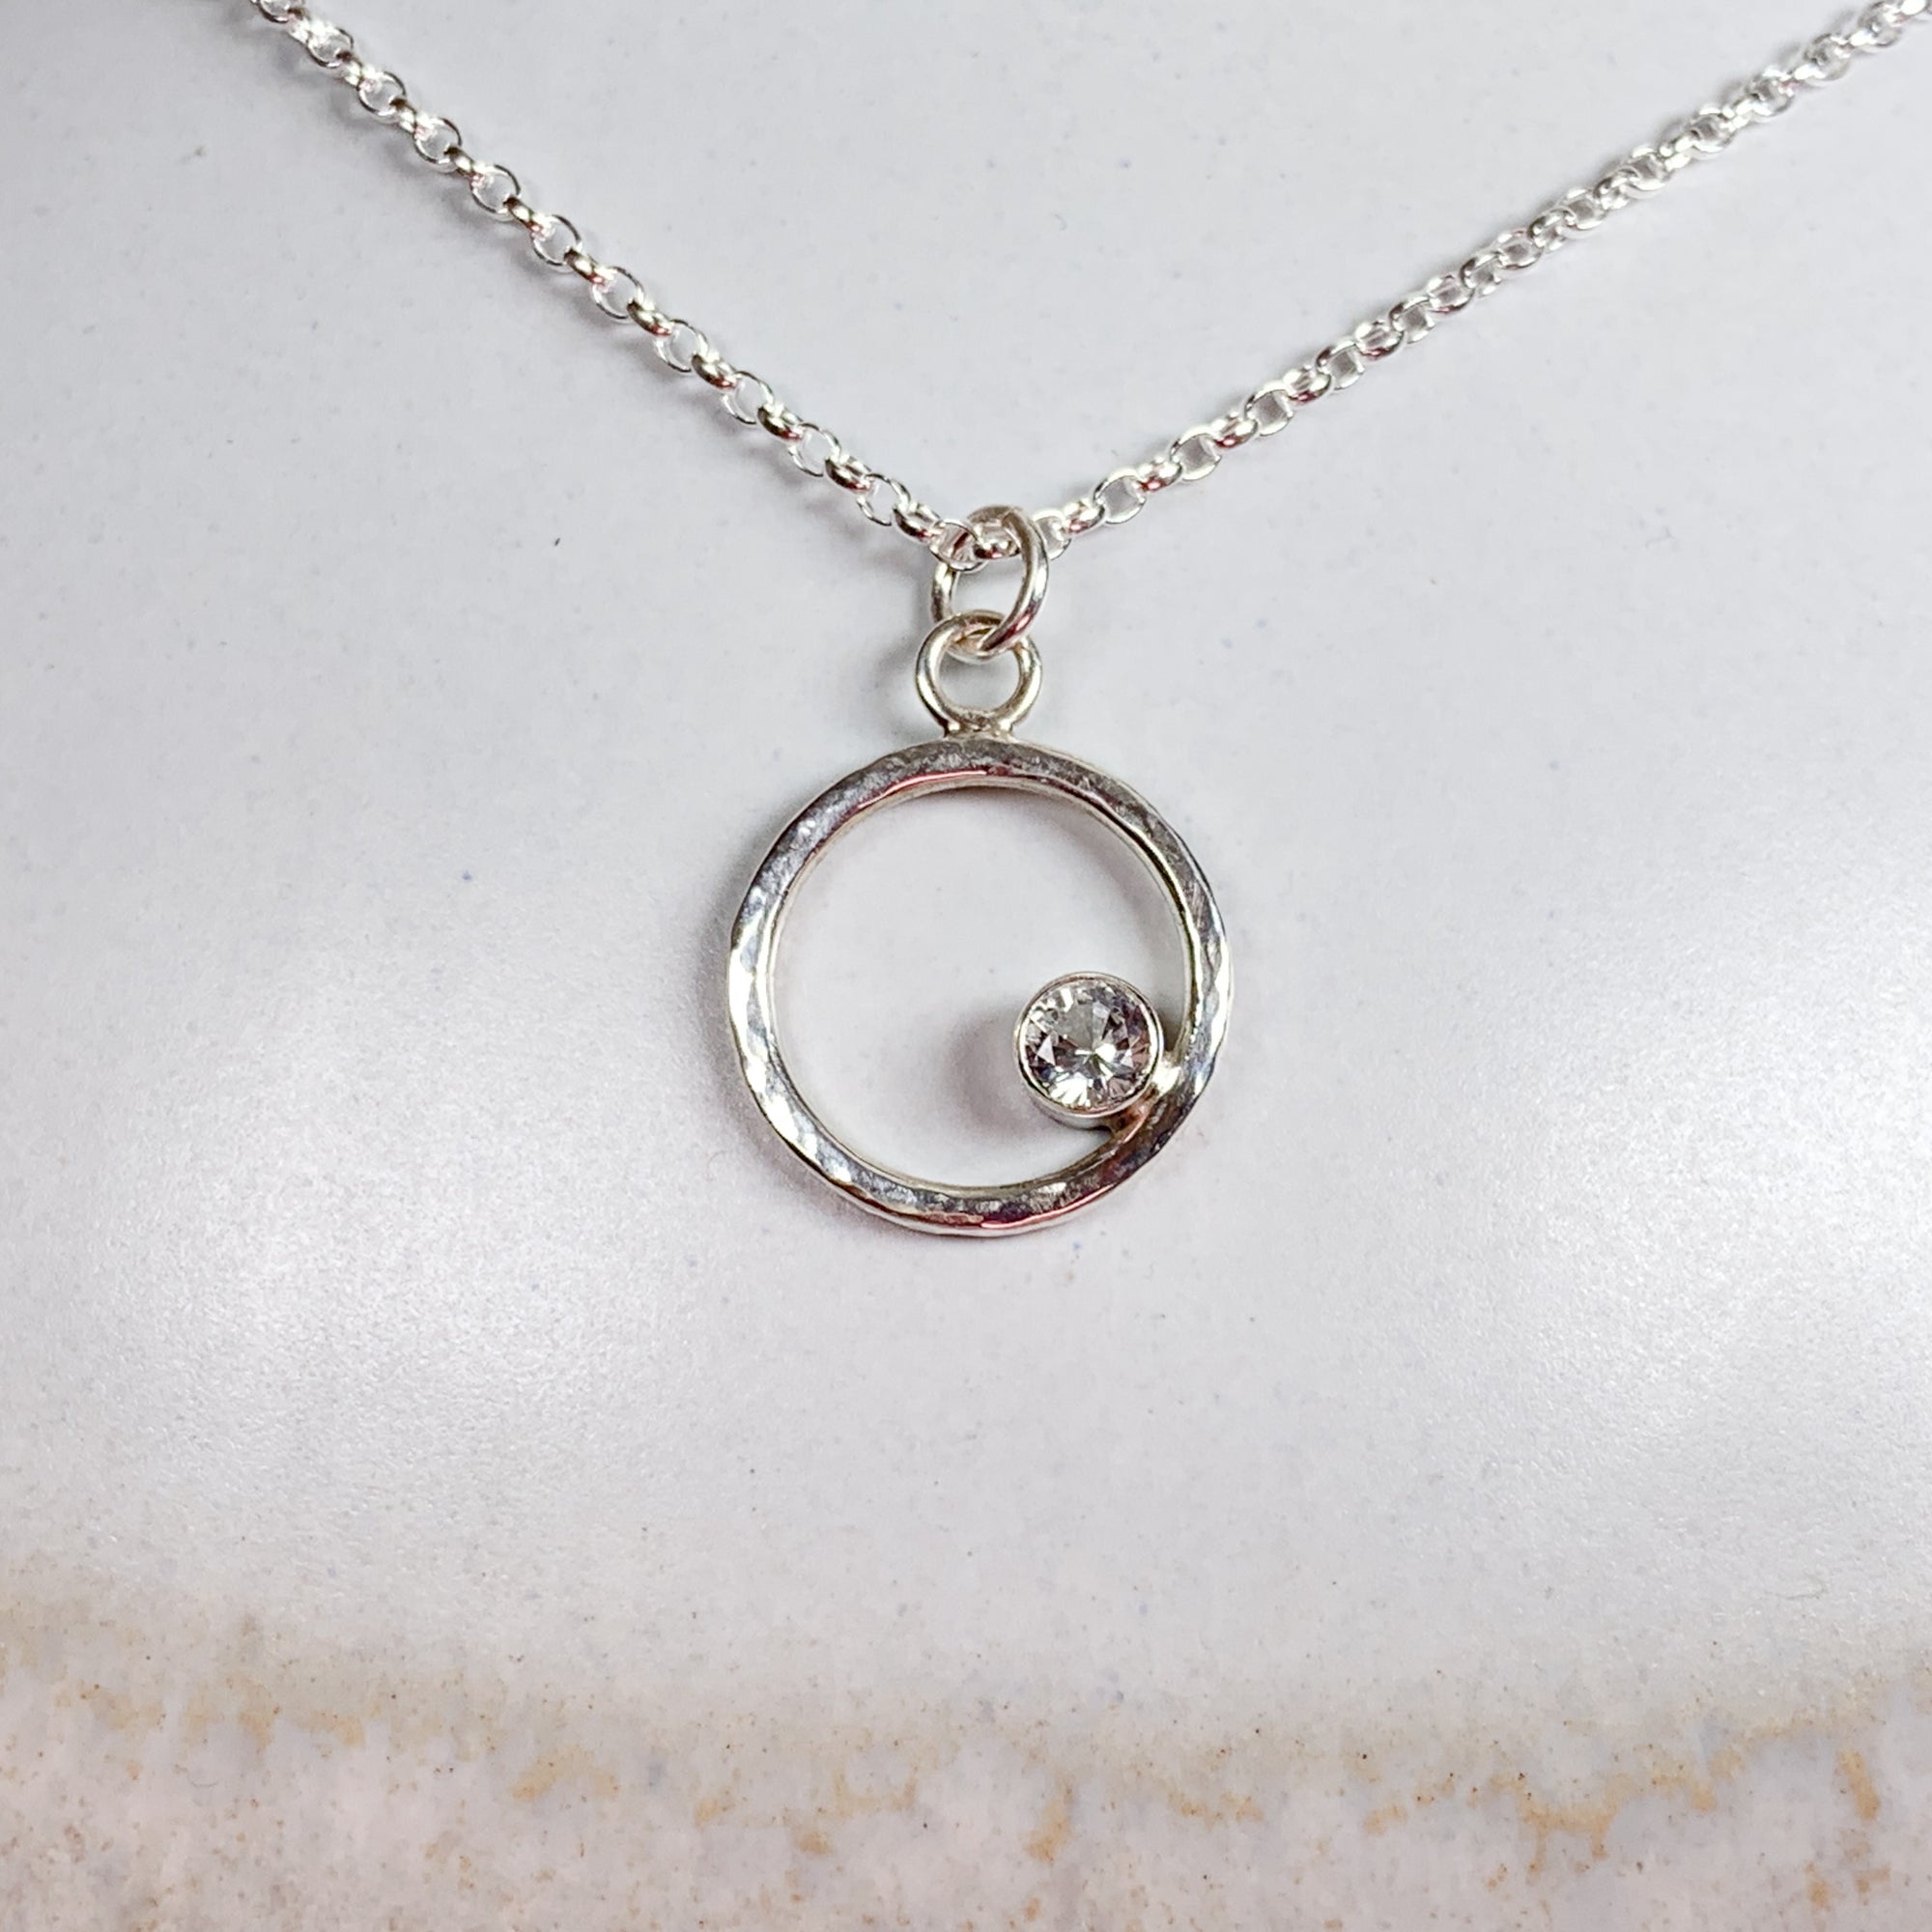 Caldera Eclissi White Sapphire Silver Pendant Necklace